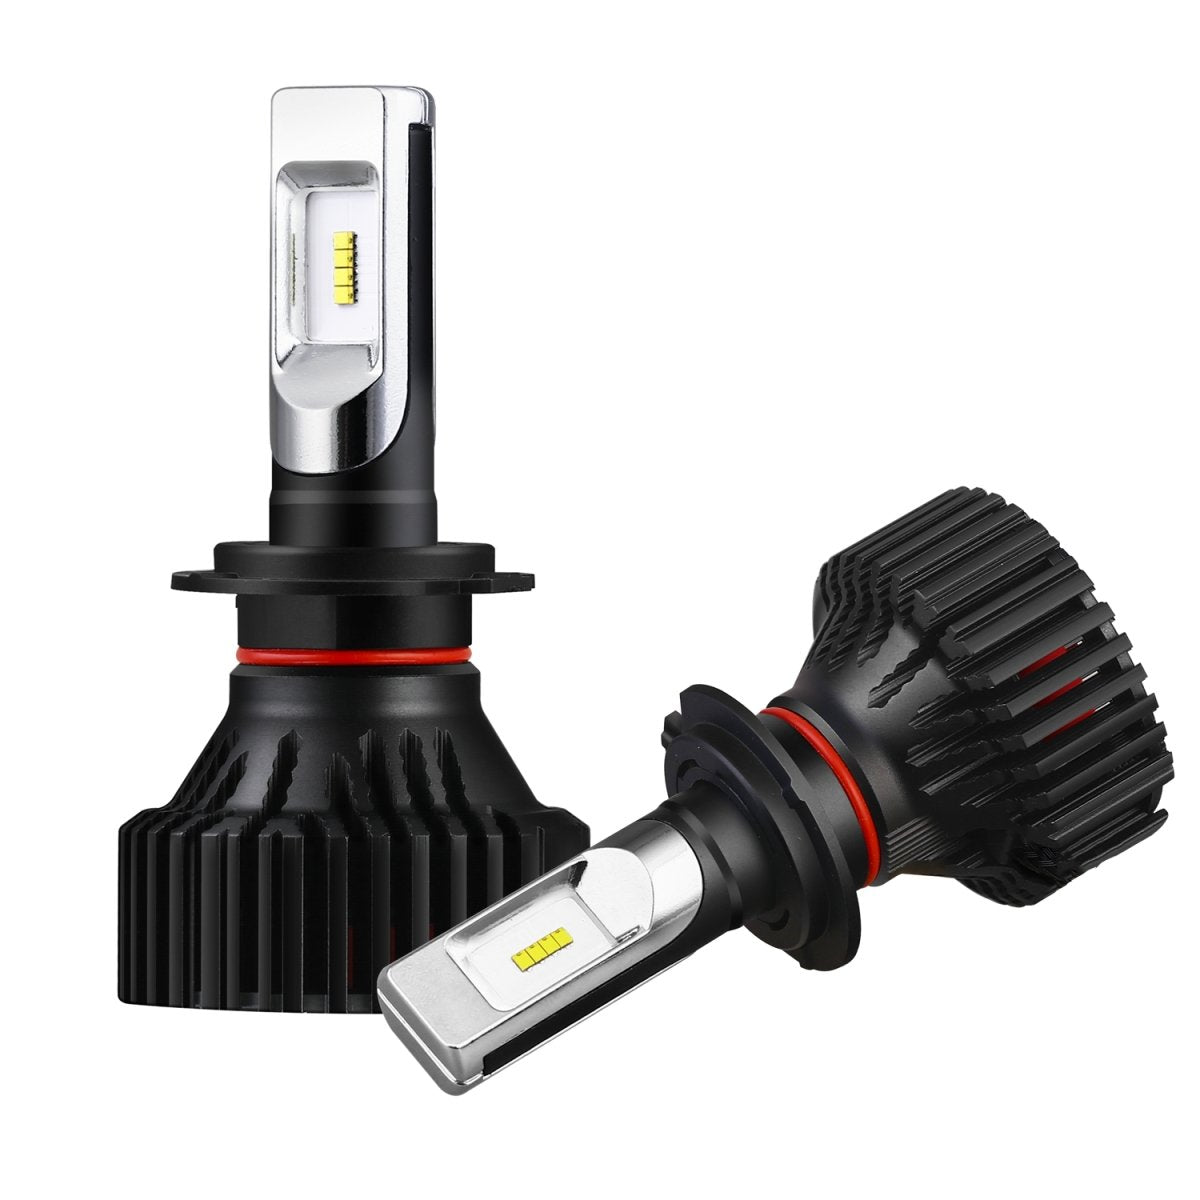 H7 LED Headlights Bulbs  Fog Lights for Cars, Trucks, 6500K